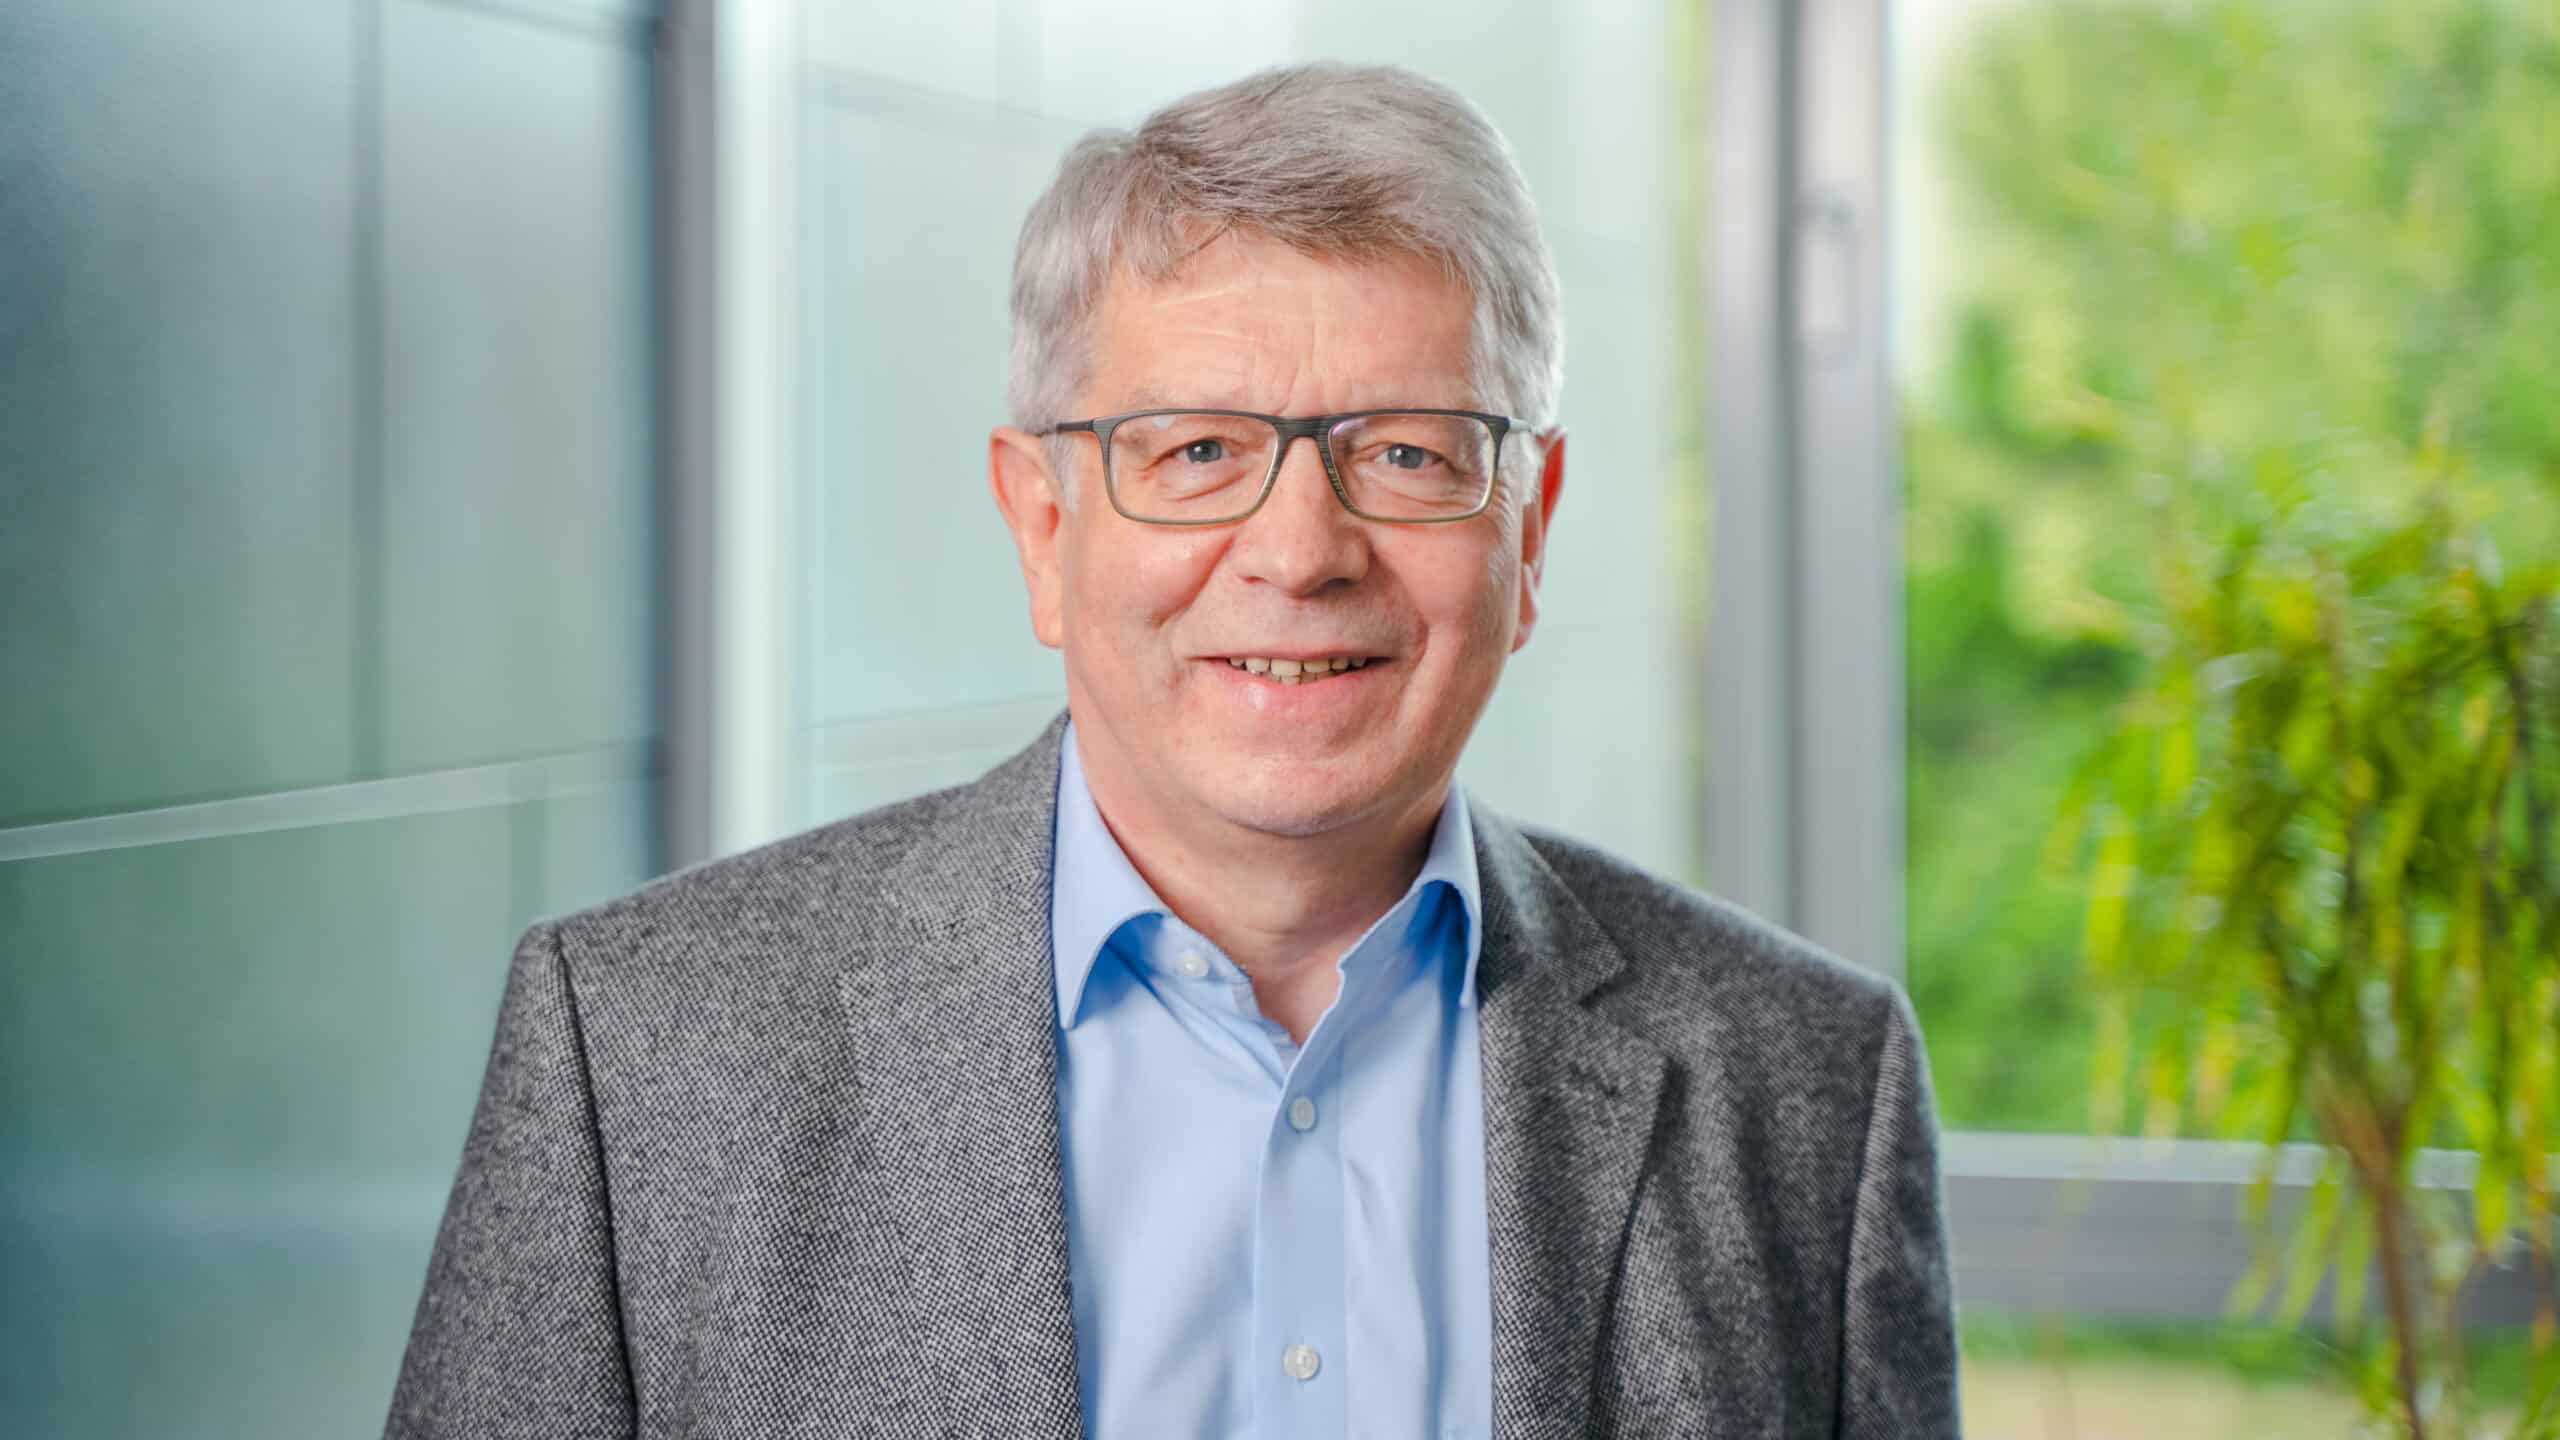 LWLC Steuerberatung und Wirtschaftsprüfung in Ibbenbüren - Stefan Lutter